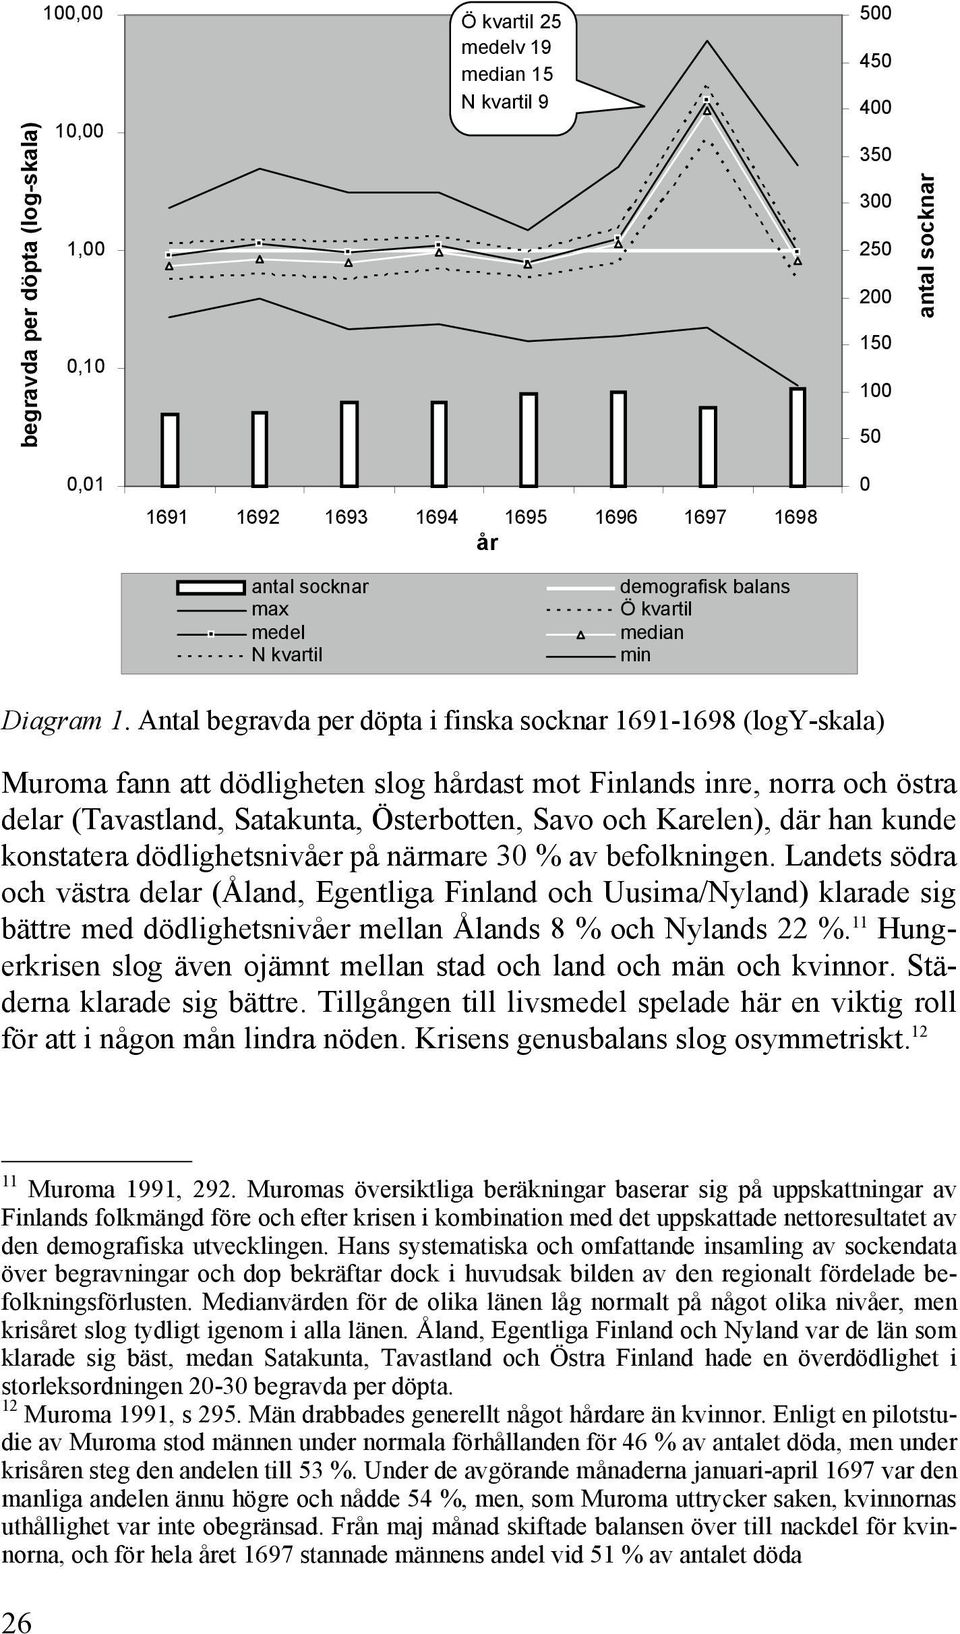 Antal begravda per döpta i finska socknar 1691-1698 (logy-skala) Muroma fann att dödligheten slog hårdast mot Finlands inre, norra och östra delar (Tavastland, Satakunta, Österbotten, Savo och